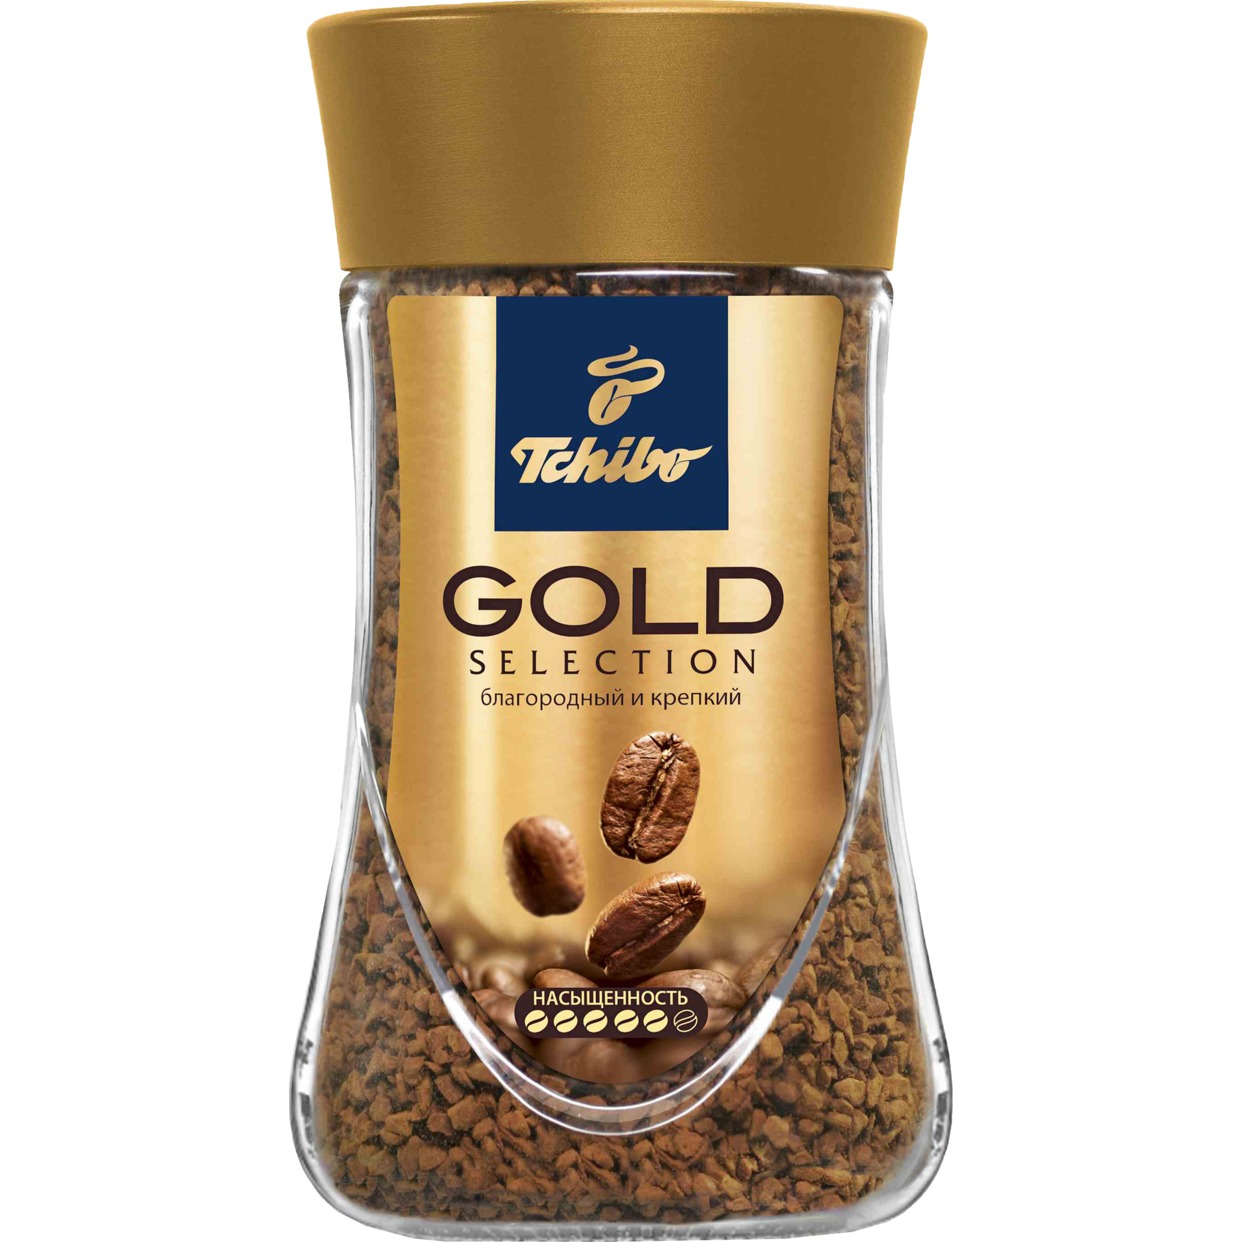 Кофе Gold Select, растворимый, Tchibo, 95 г по акции в Пятерочке